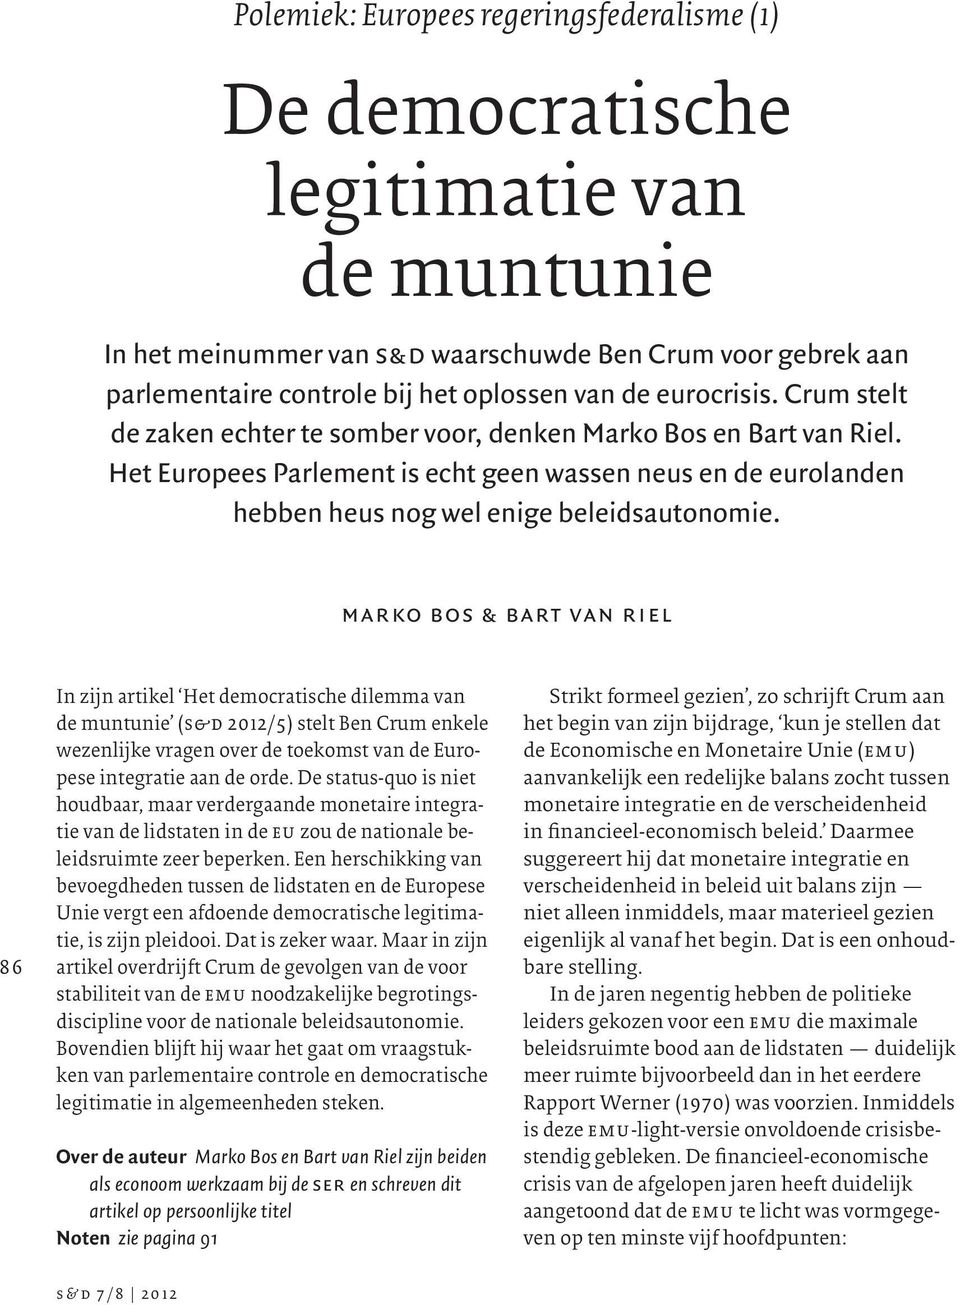 marko bos & bart van riel 86 In zijn artikel Het democratische dilemma van de muntunie (s&d 2012/5) stelt Ben Crum enkele wezenlijke vragen over de toekomst van de Europese integratie aan de orde.